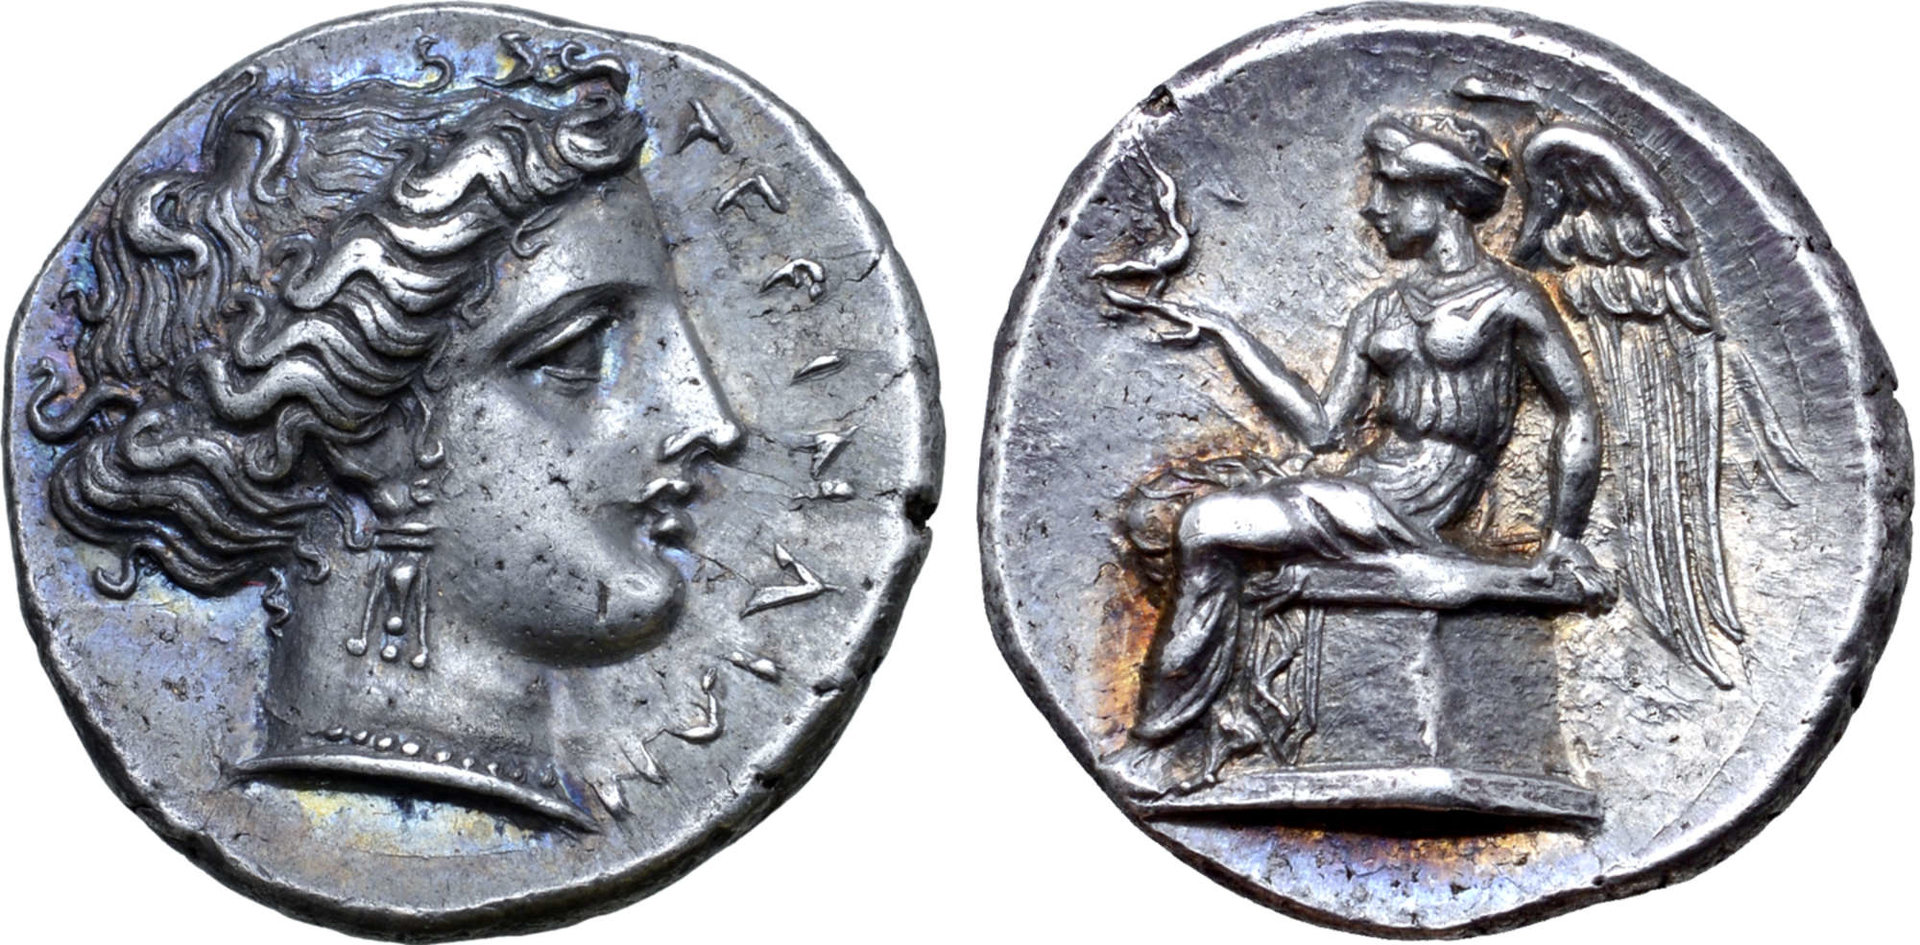 Bruttium Stater, Circa 380 BC.jpg